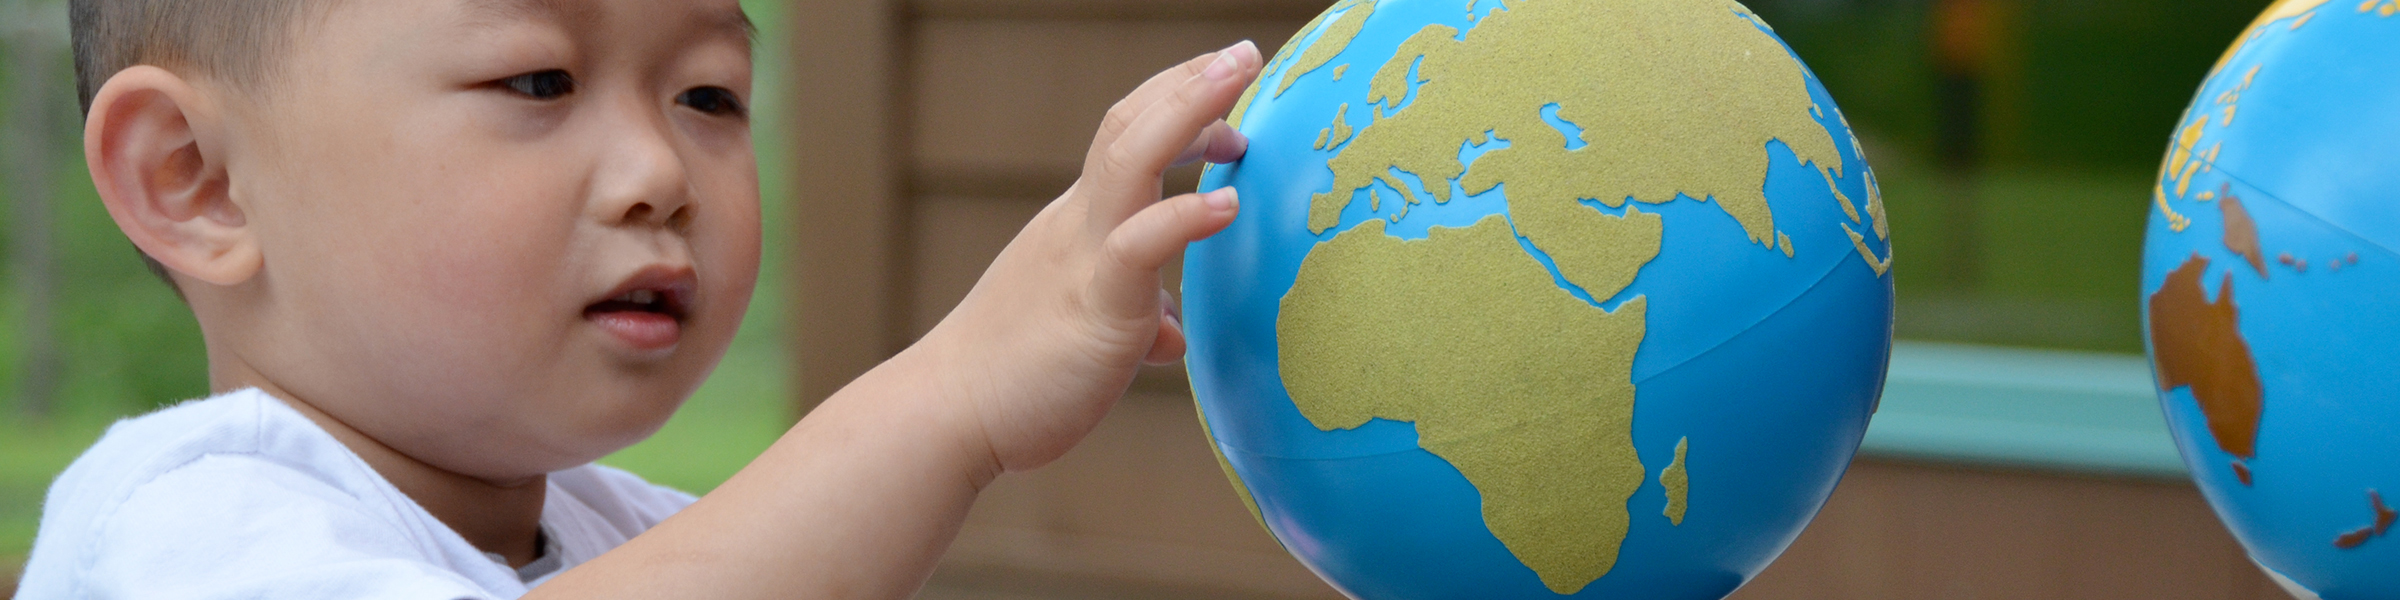 Find Your Country Montessori Sandpaper Globe